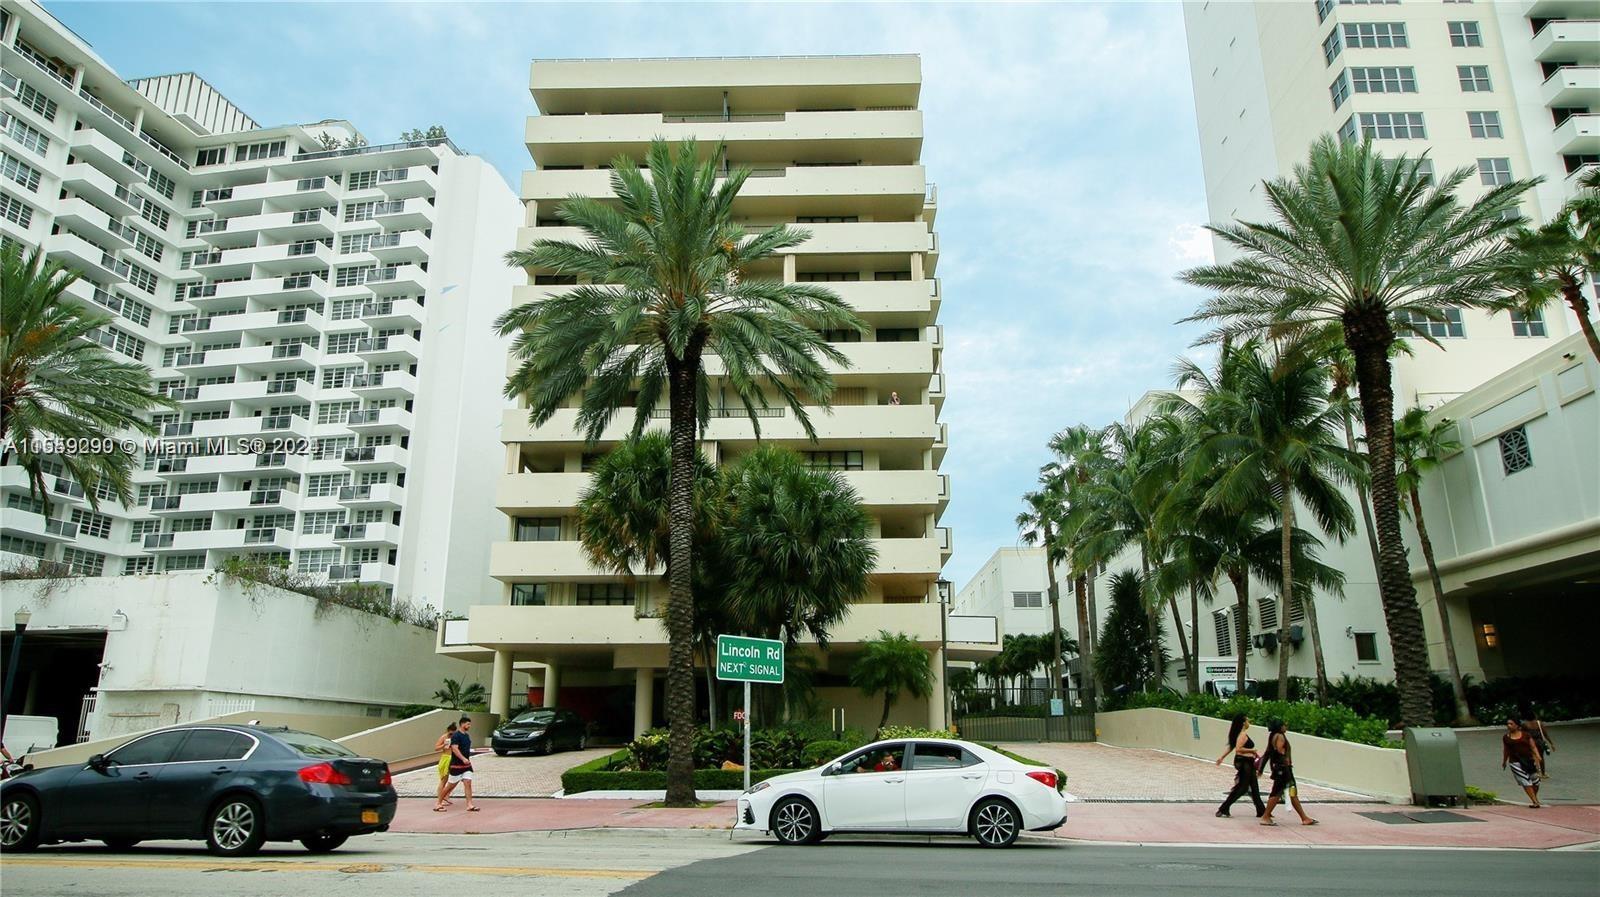 Photo of 1621 Collins Ave #208 in Miami Beach, FL